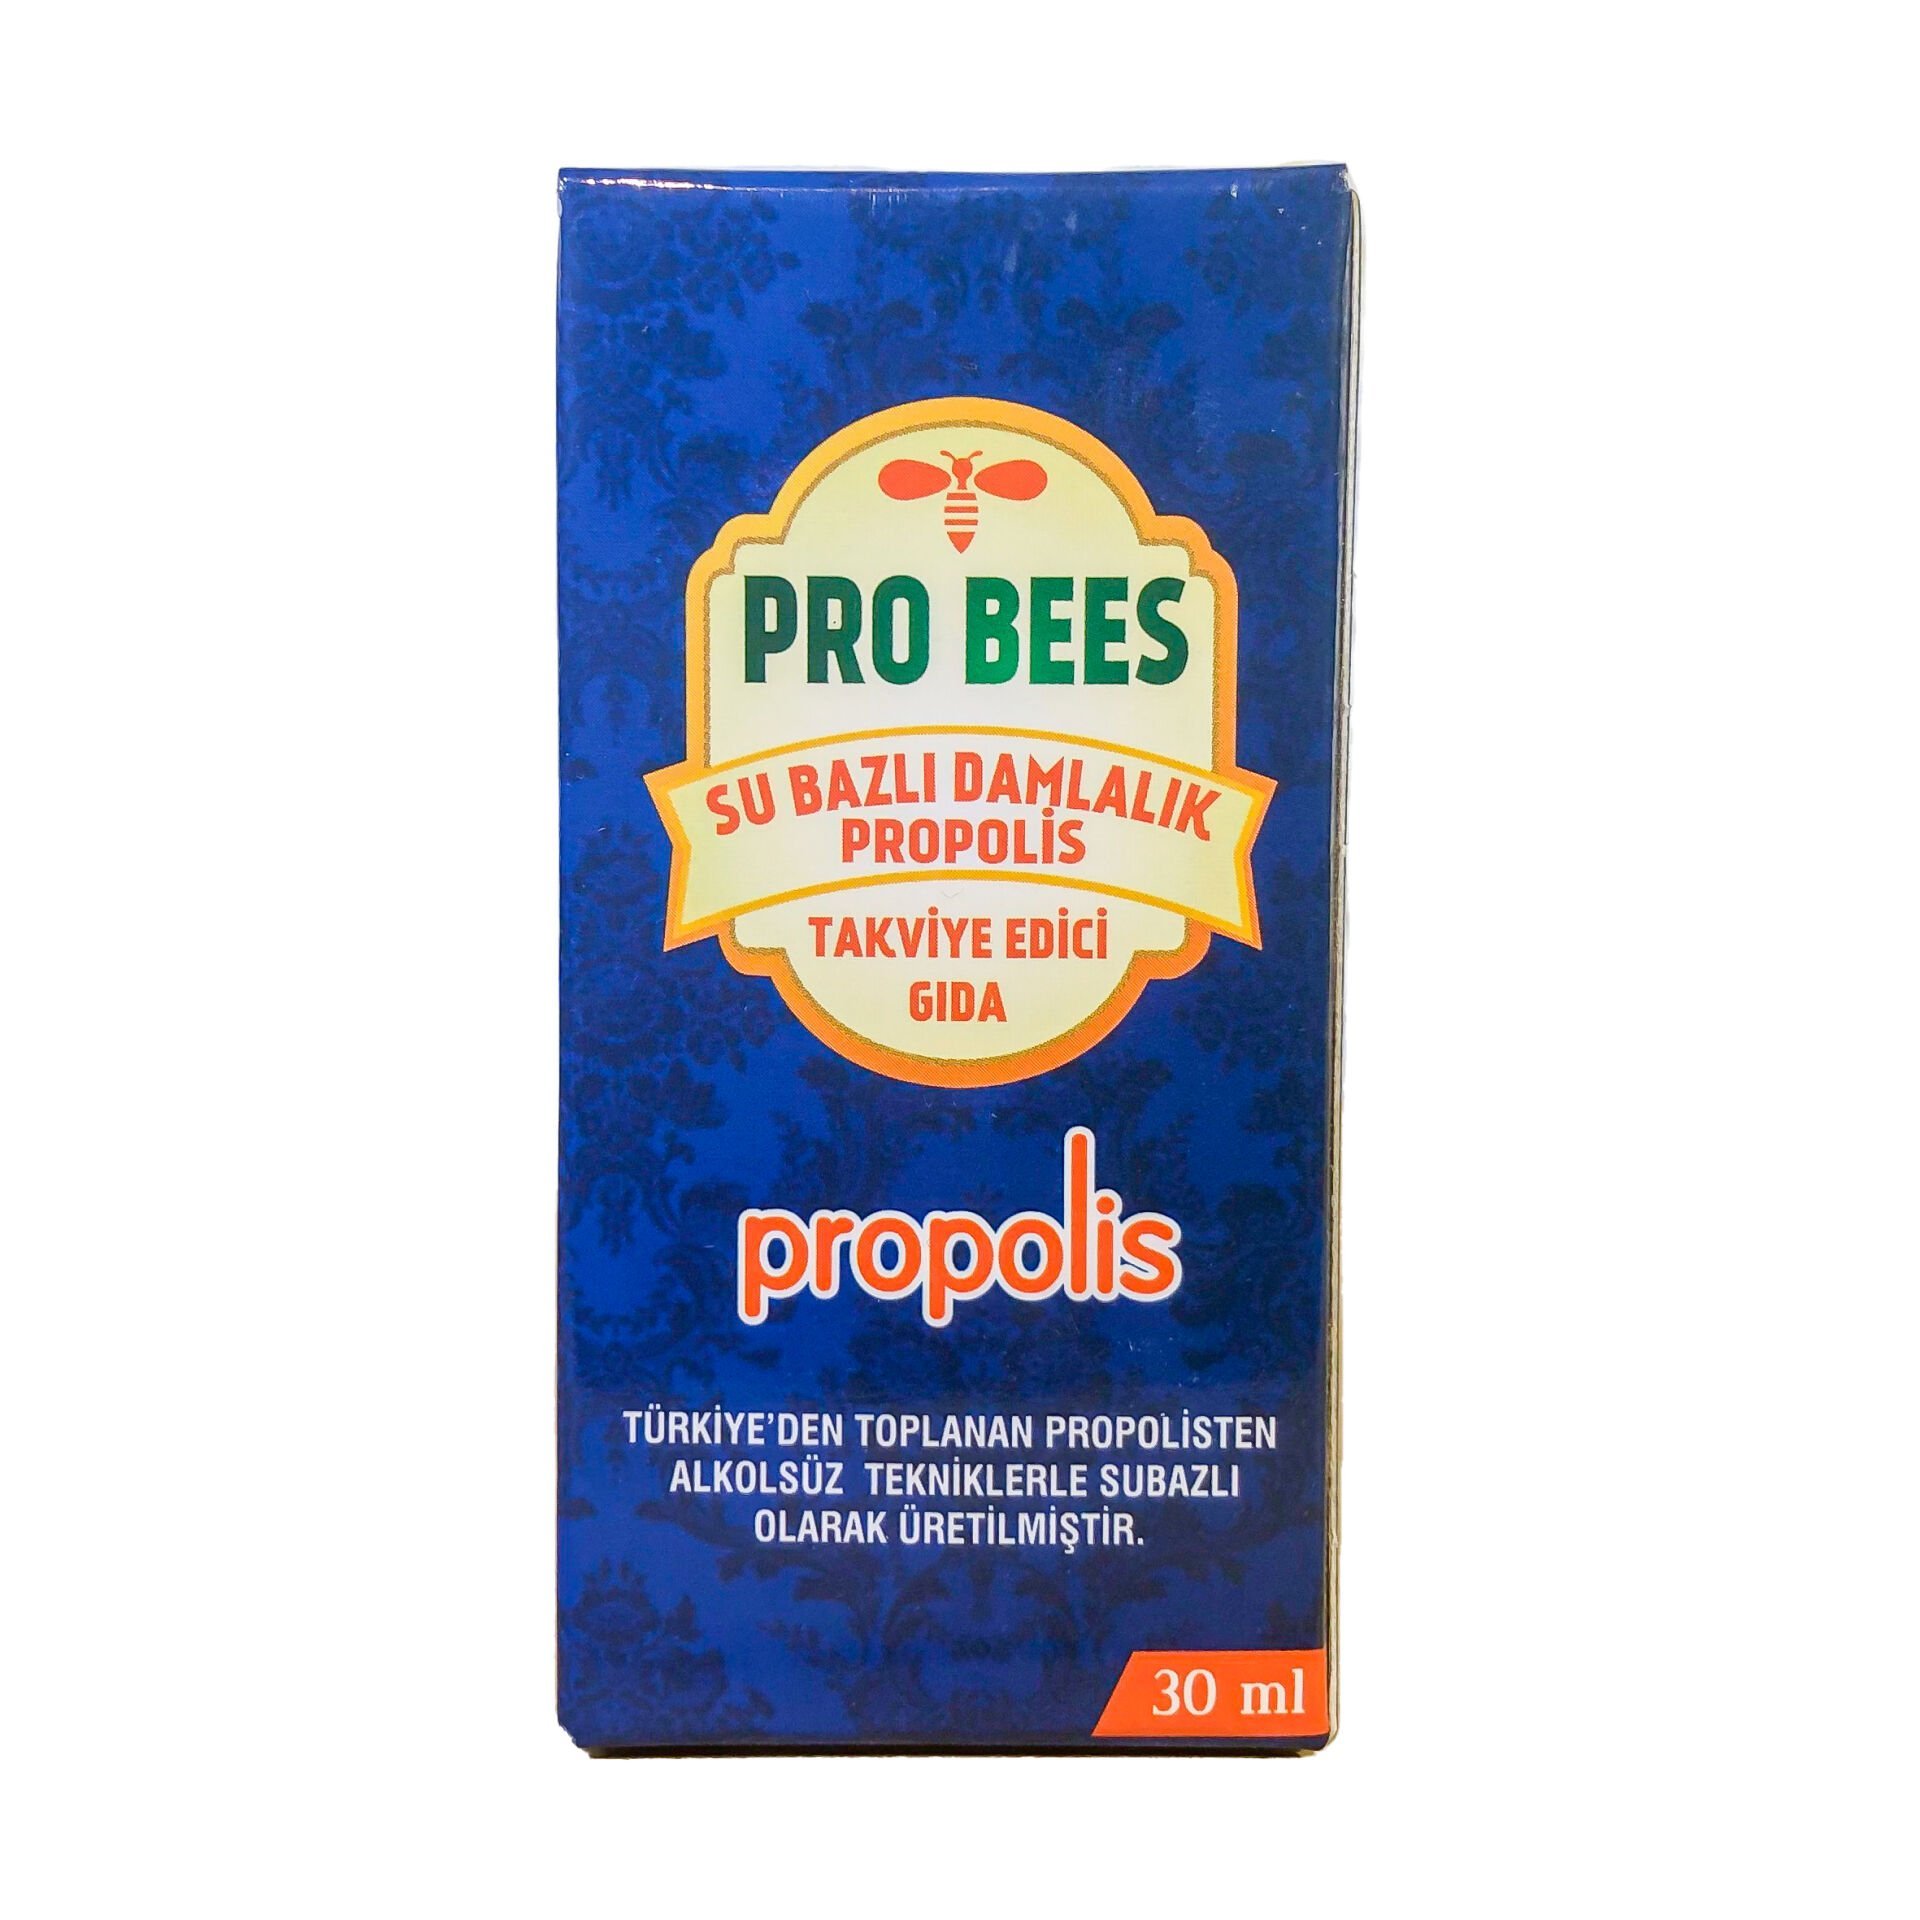 Pro Bees Su Bazlı Damlalık Propolis Takviye Edici Gıda 30ml